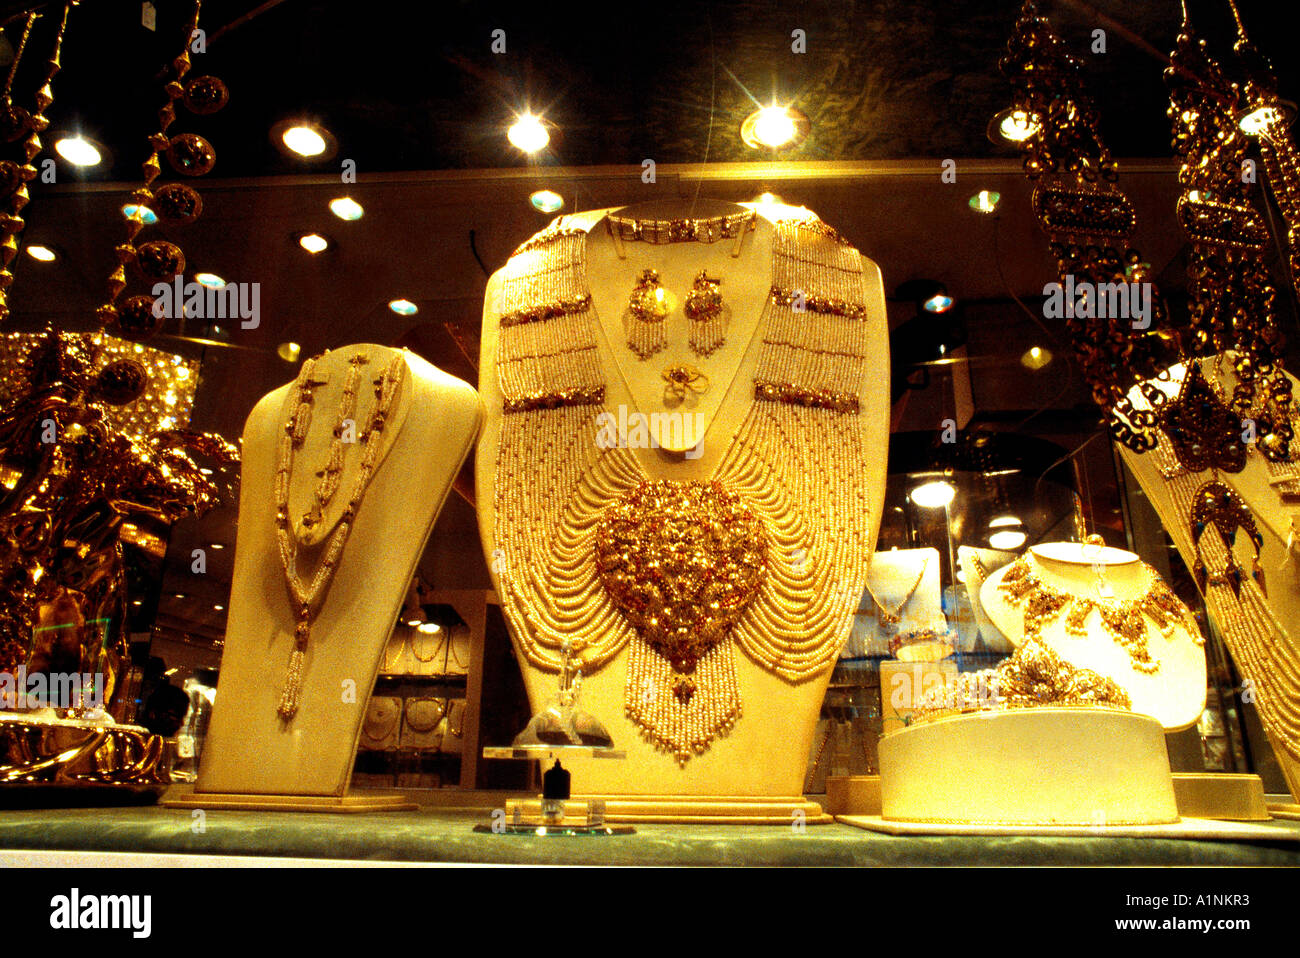 Dubai UAE New Gold Souk des bijoux sur l'affichage Banque D'Images